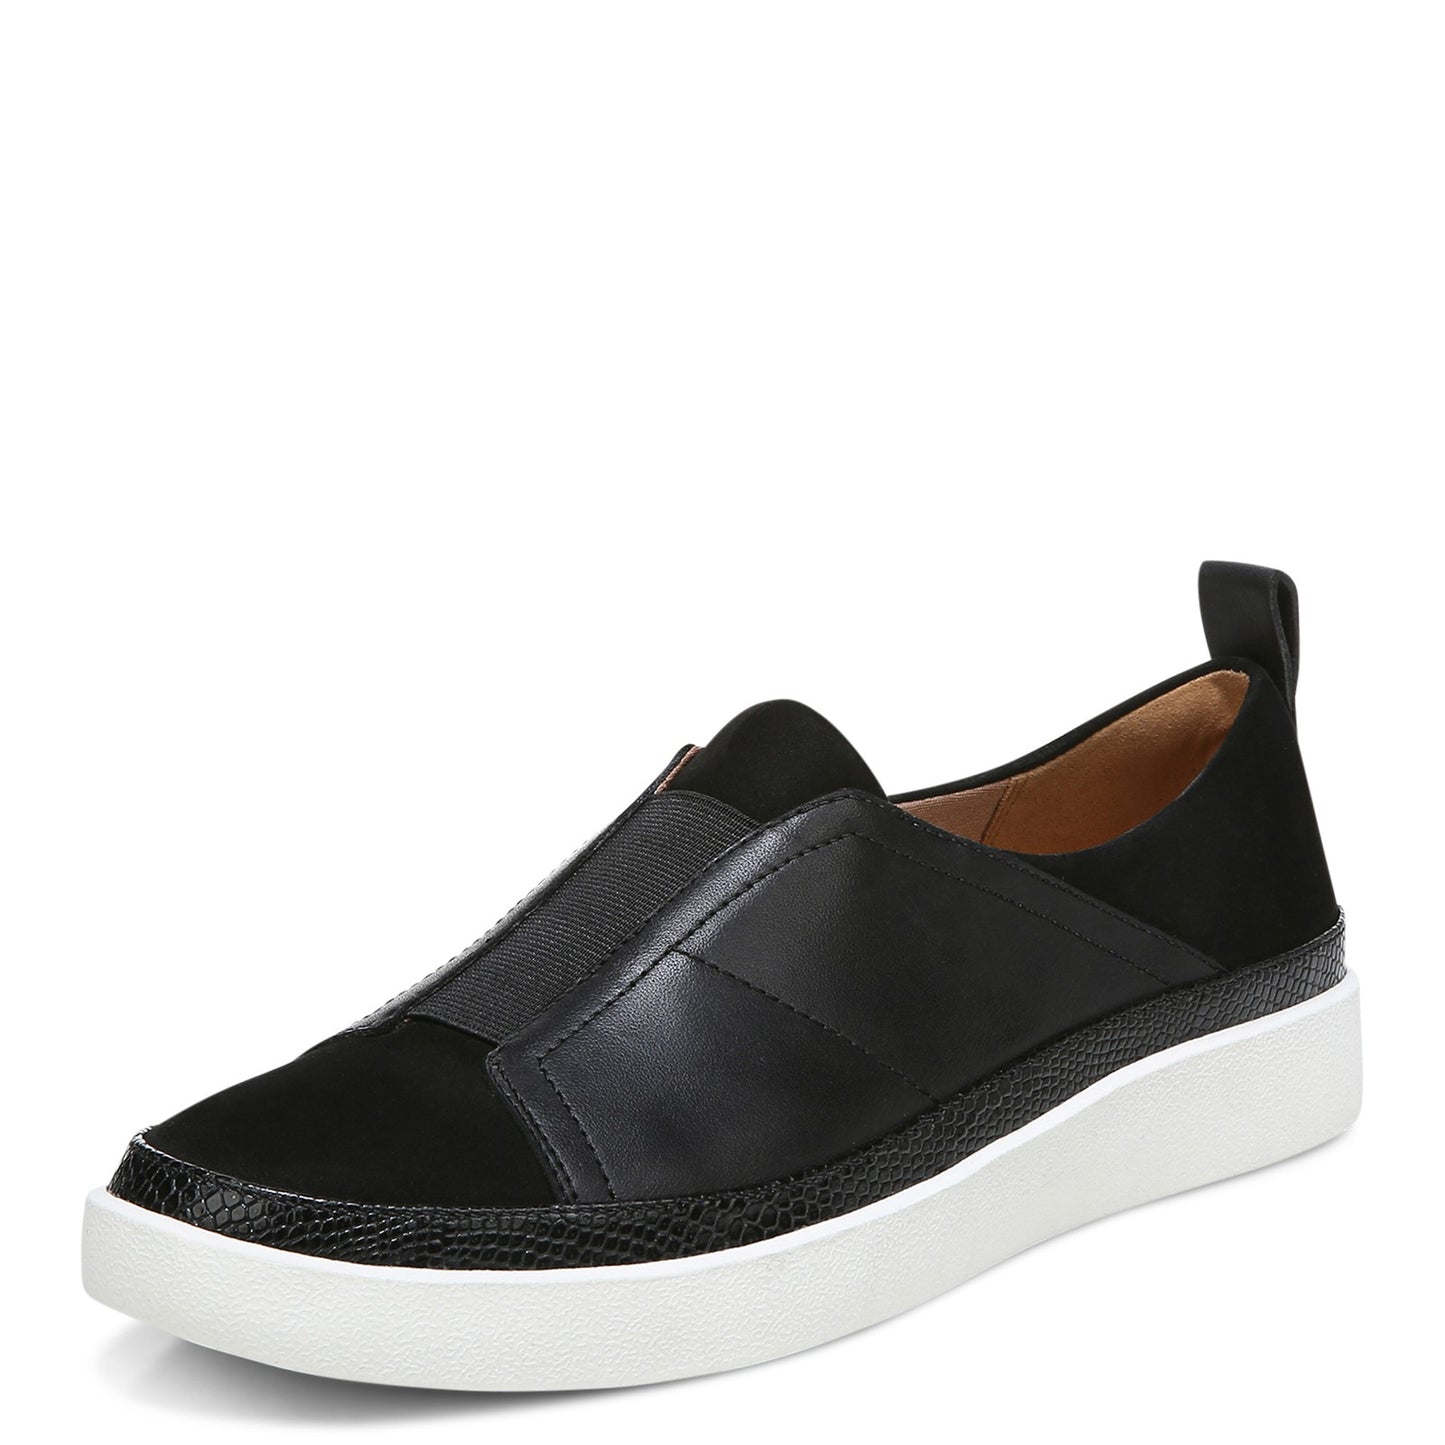 Peltz Shoes  Women's Vionic Zinah Slip-On Black Leather H7721L1001